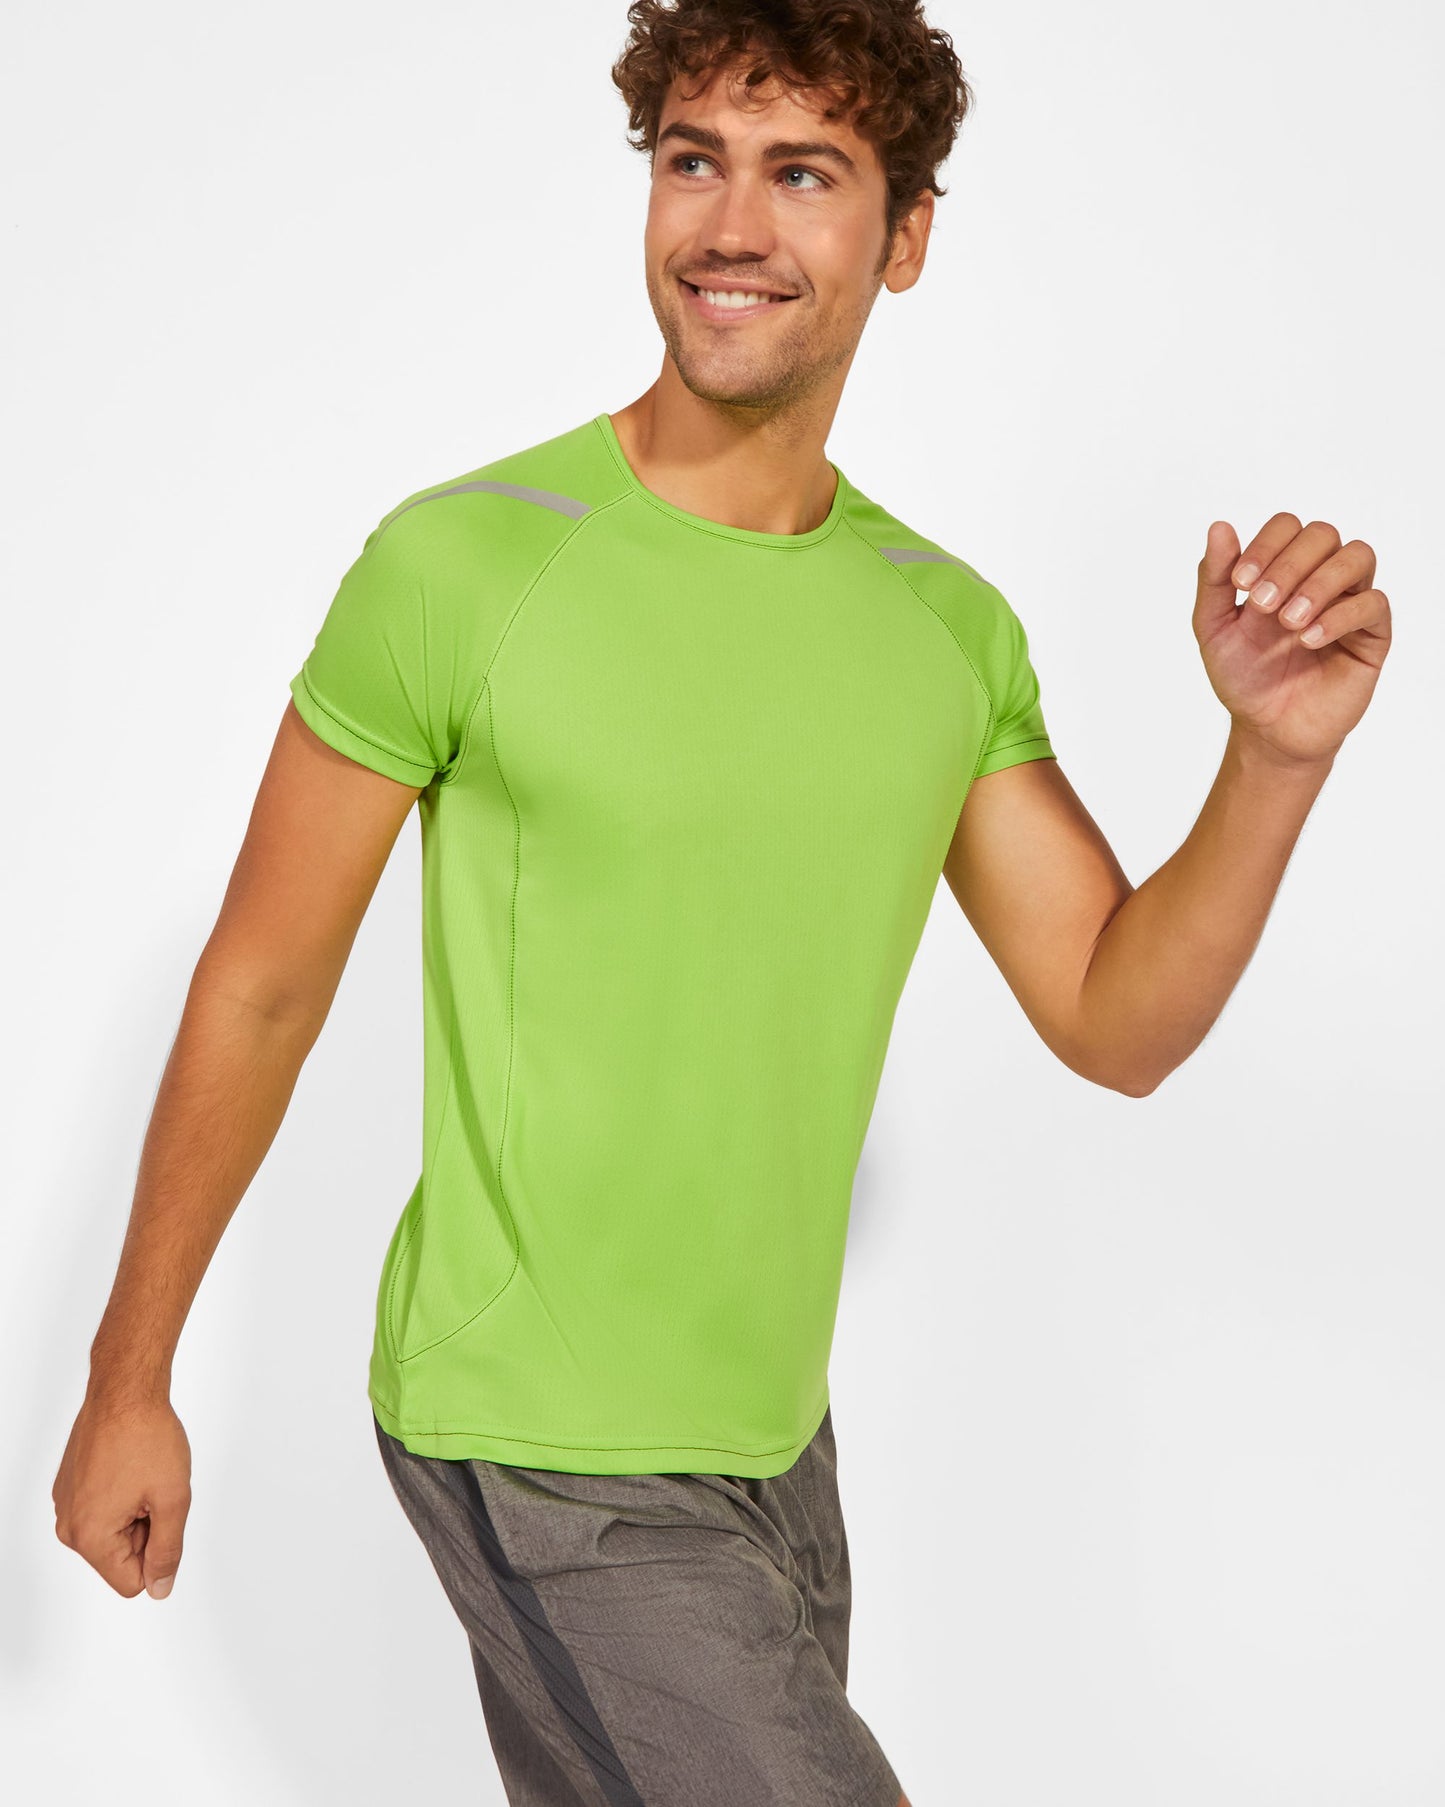 Camiseta deportiva hombre manga corta punto liso - Sepang